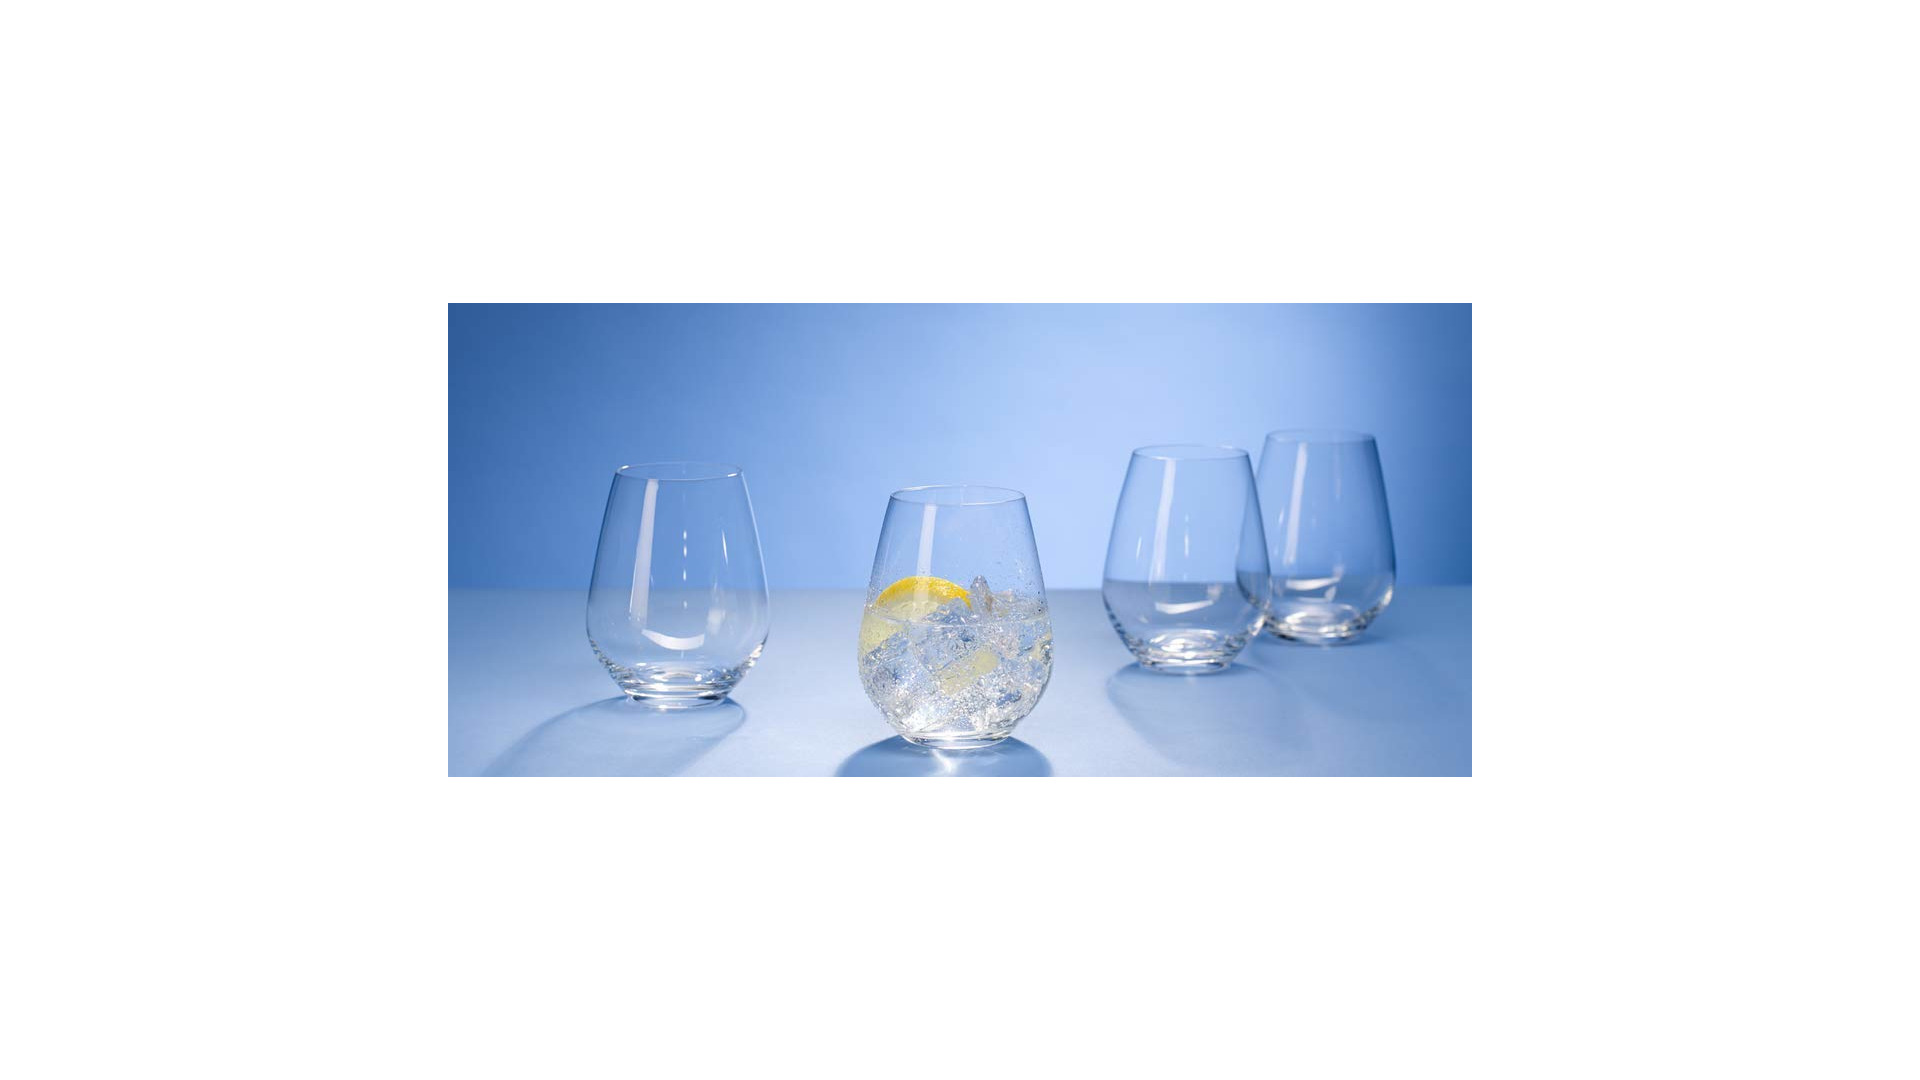 Набор стаканов Villeroy&Boch Cristal Ovid 420 мл, 4 шт, стекло хрустальное